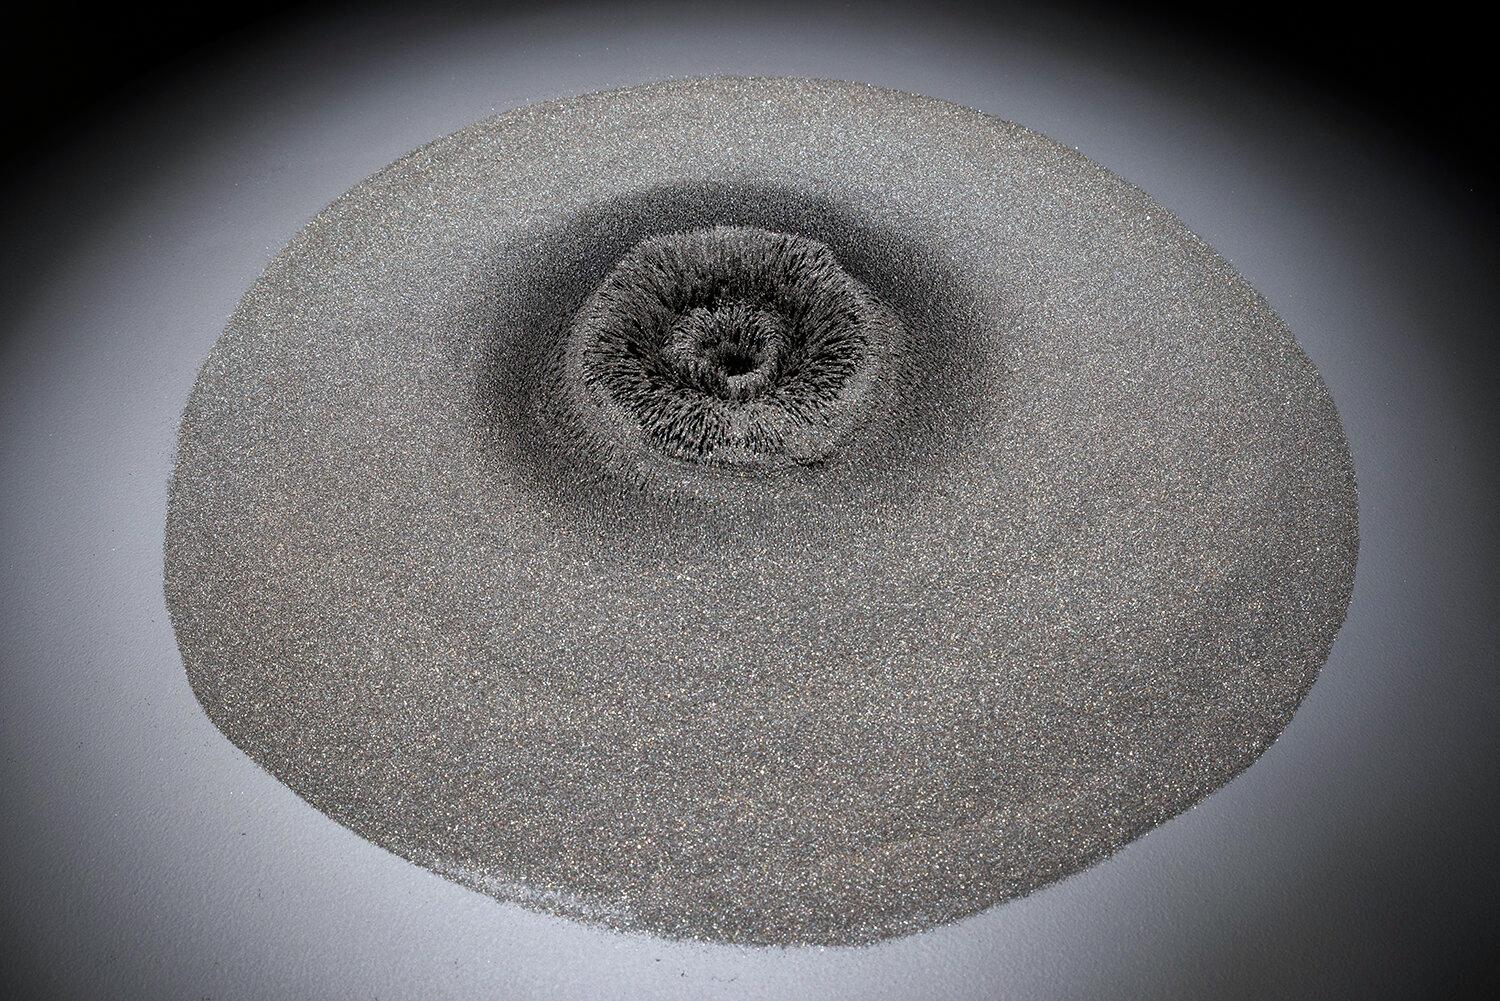 "Vortex" von John Ruppert
Vulkansand (Magnetit) aus dem Joshua Tree, Seltenerdmagnet

In den letzten 35 Jahren hat John Ruppert mit gegossenen Metallen, hergestellten Materialien wie Maschendrahtgewebe, gemischten Medien und in jüngerer Zeit mit